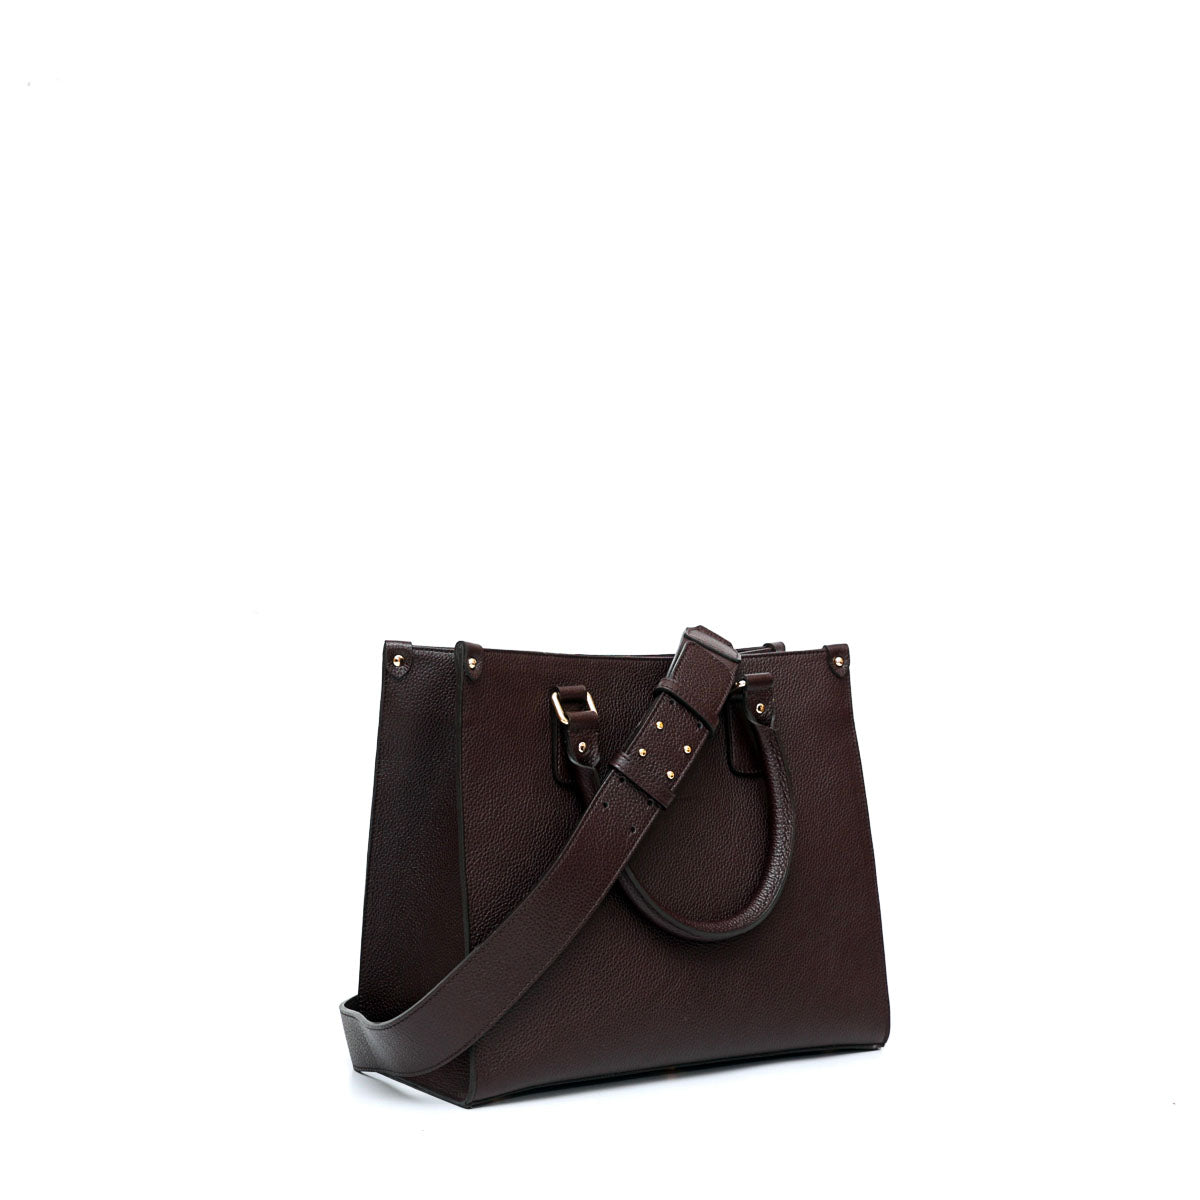 Lady S, borsa da donna con tracolla in pelle marrone scuro, prodotta da Pianigiani Bags